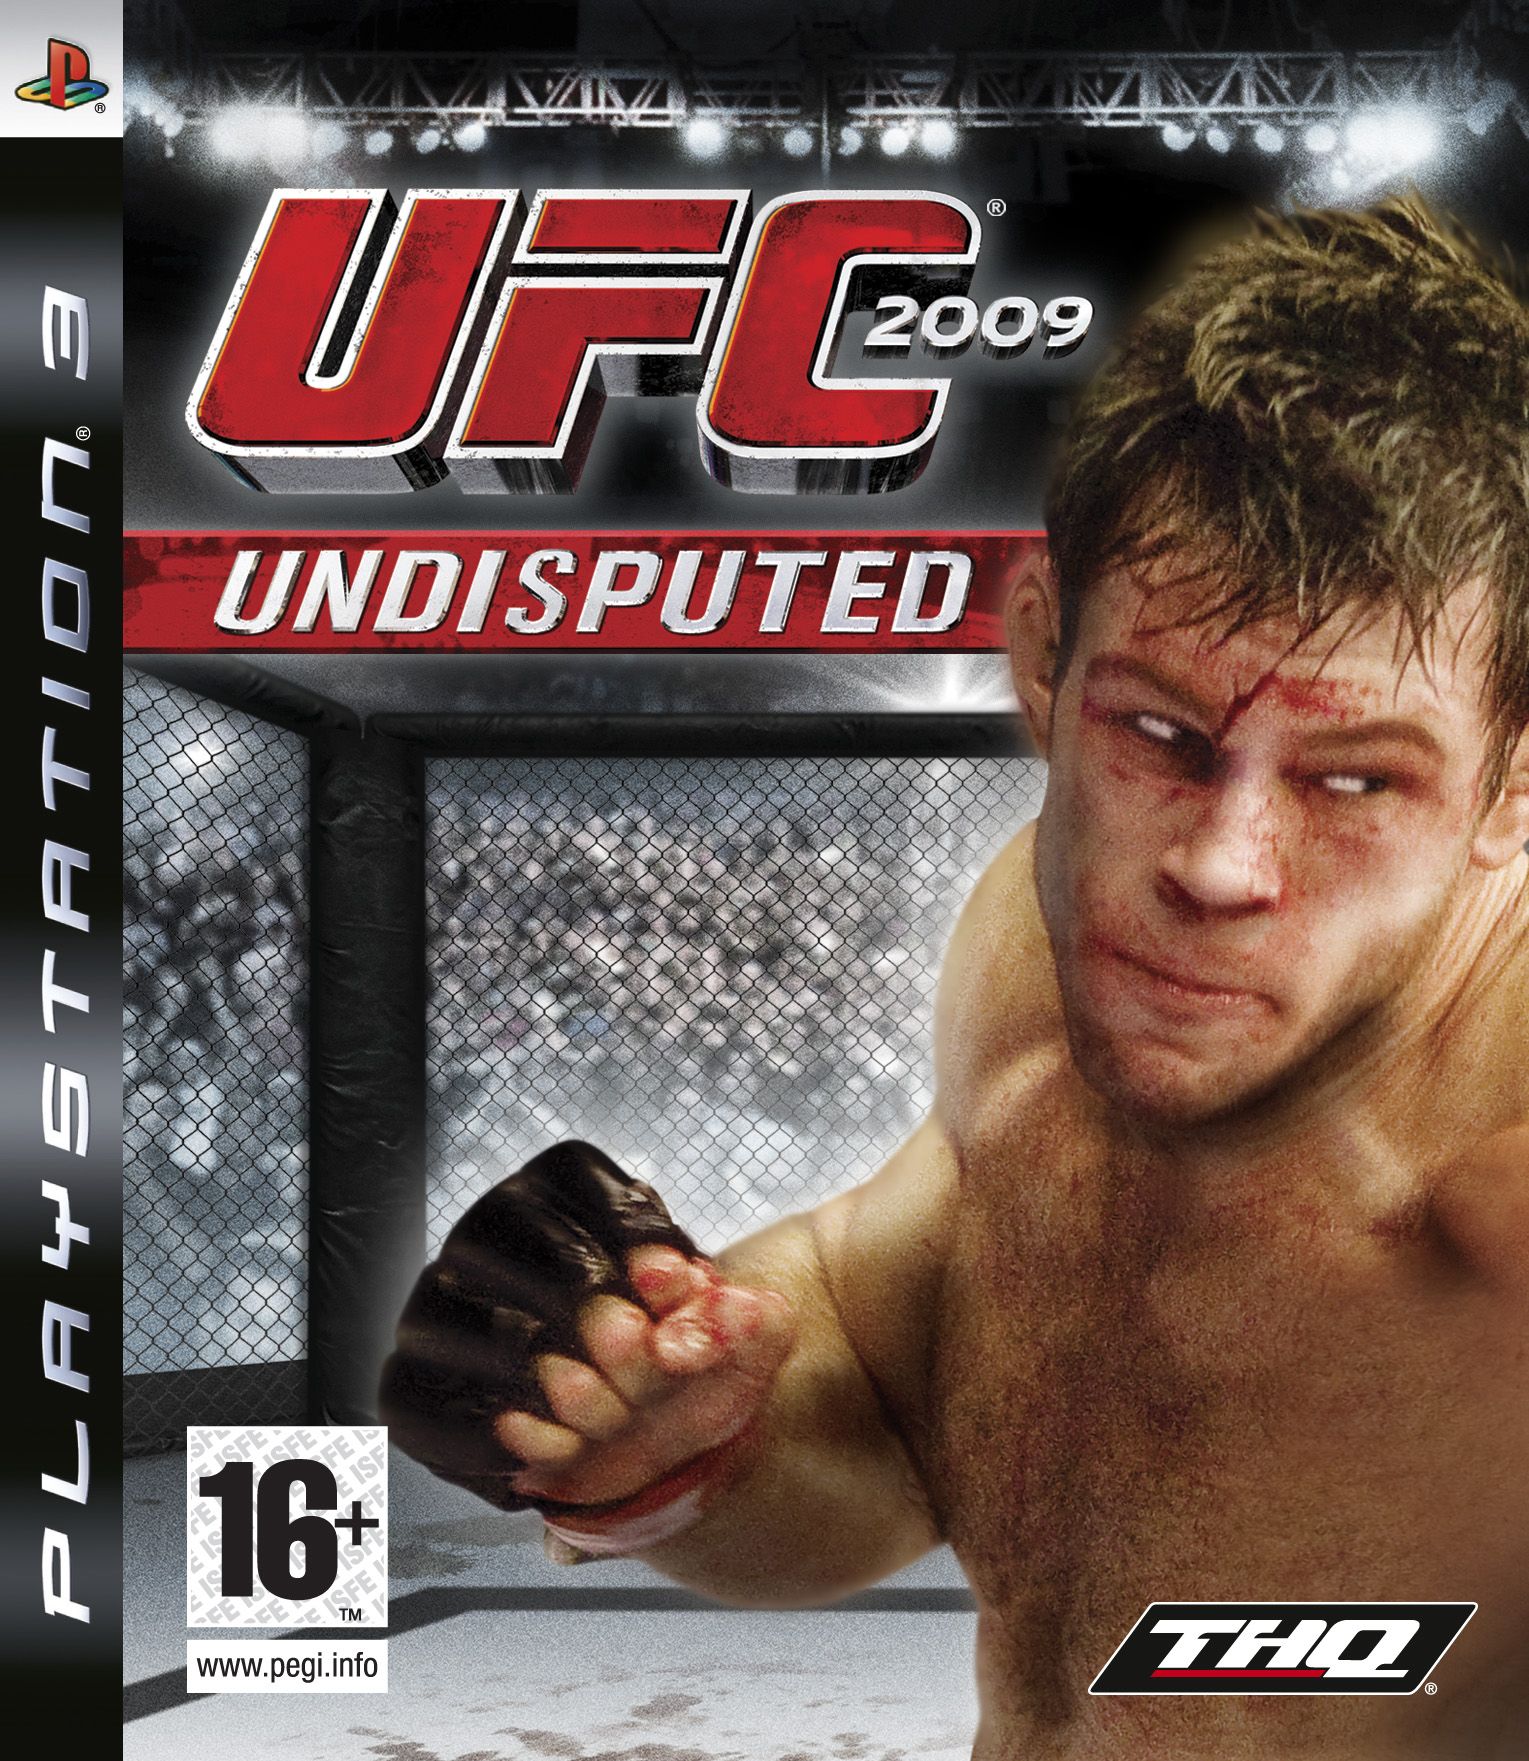 UFC 2009 - Undisputed